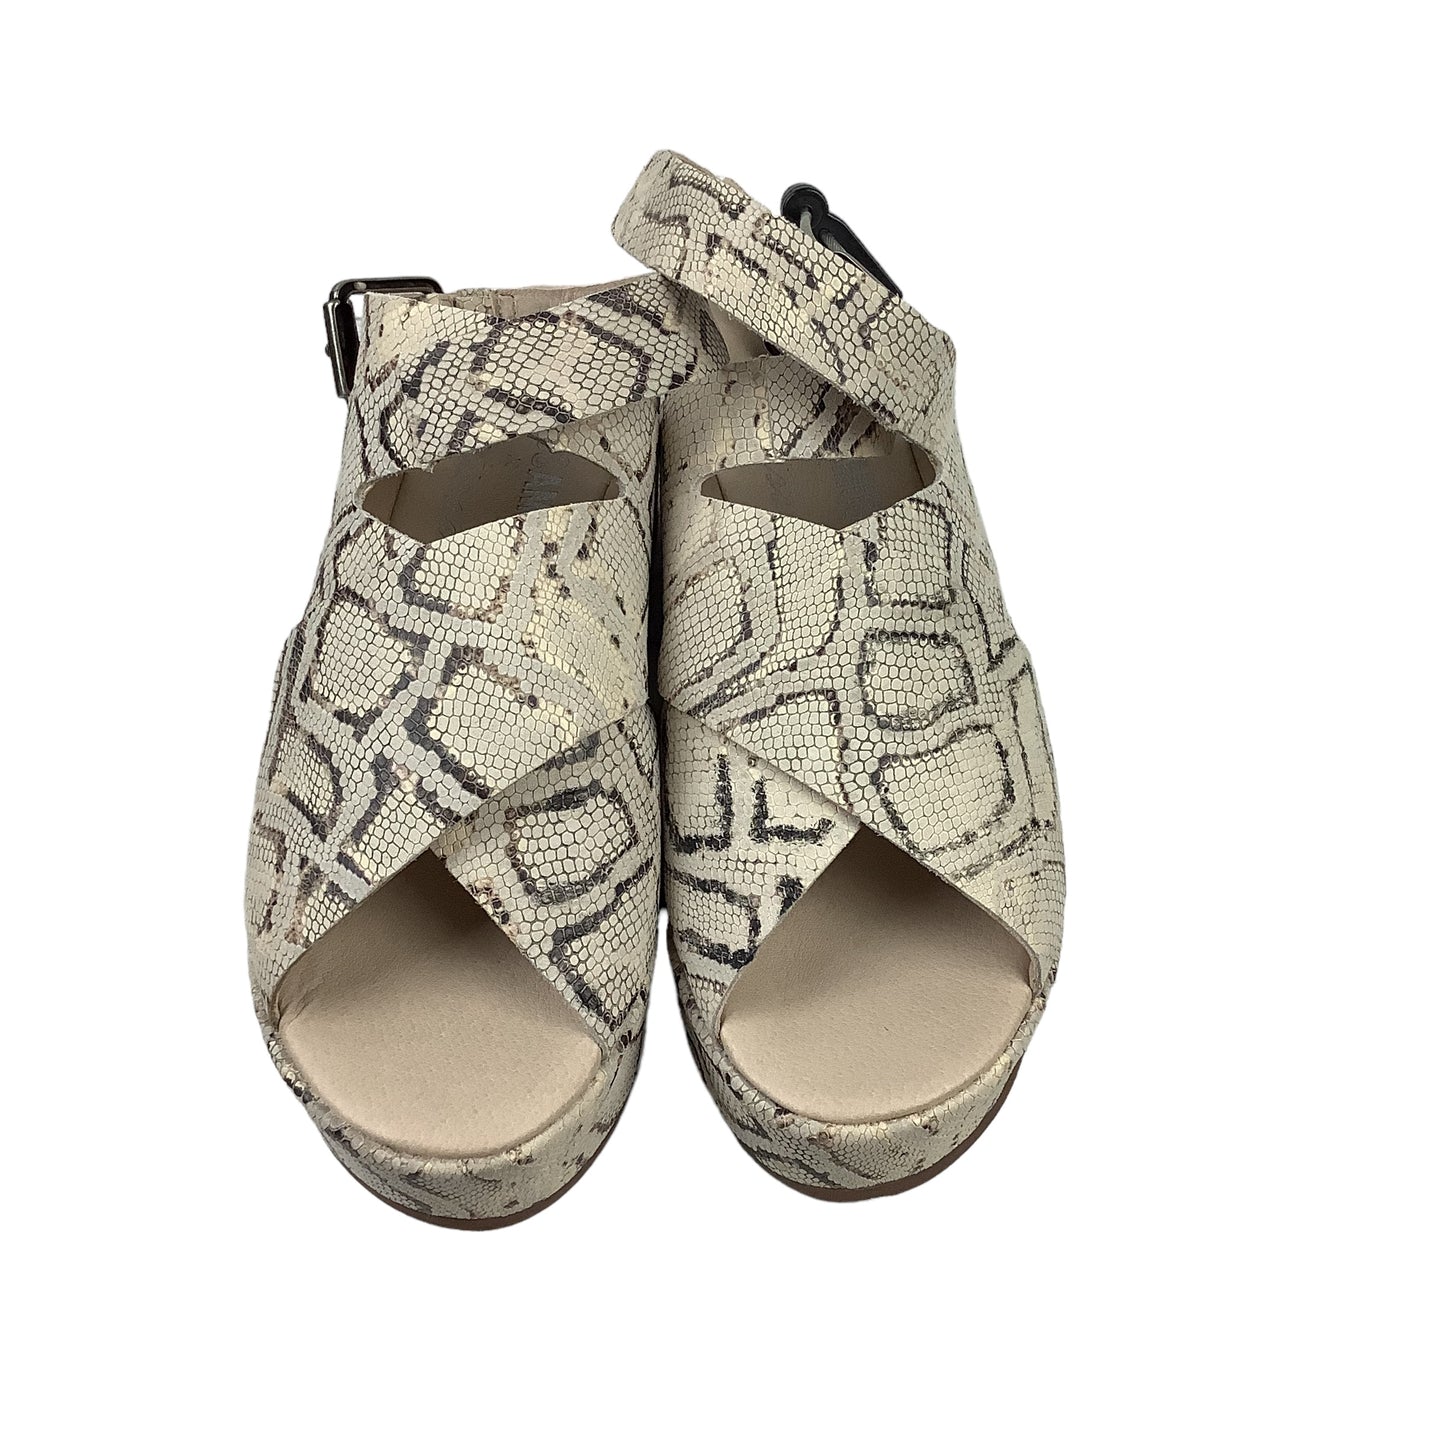 Sandals Heels Platform By Matisse  Size: 9